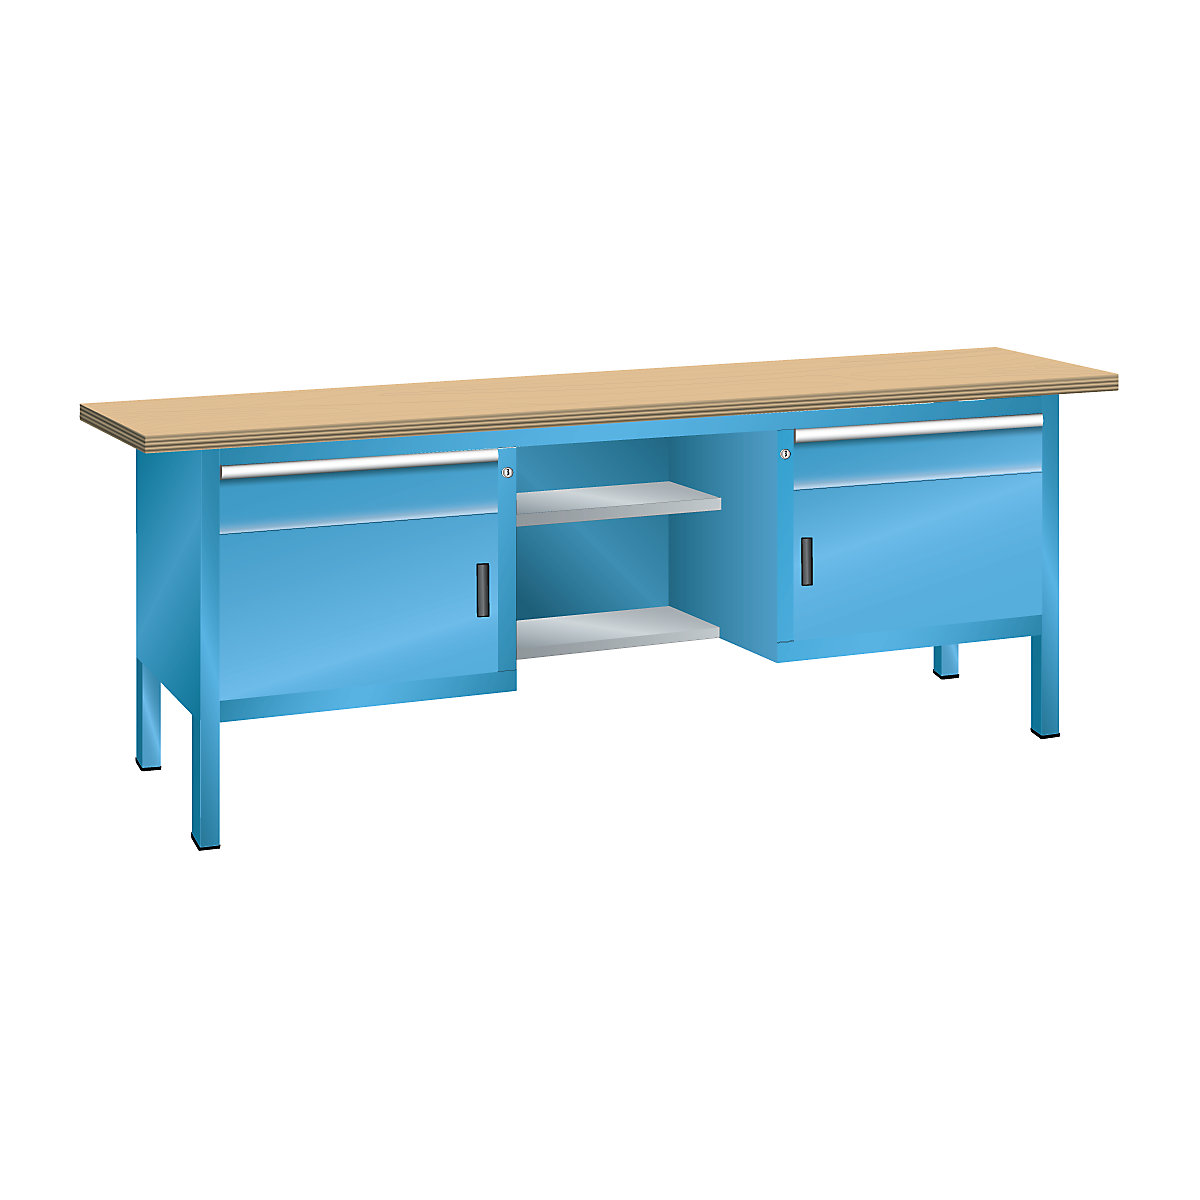 Dílenský stůl s deskou z překližky Multiplex, rámová konstrukce - LISTA